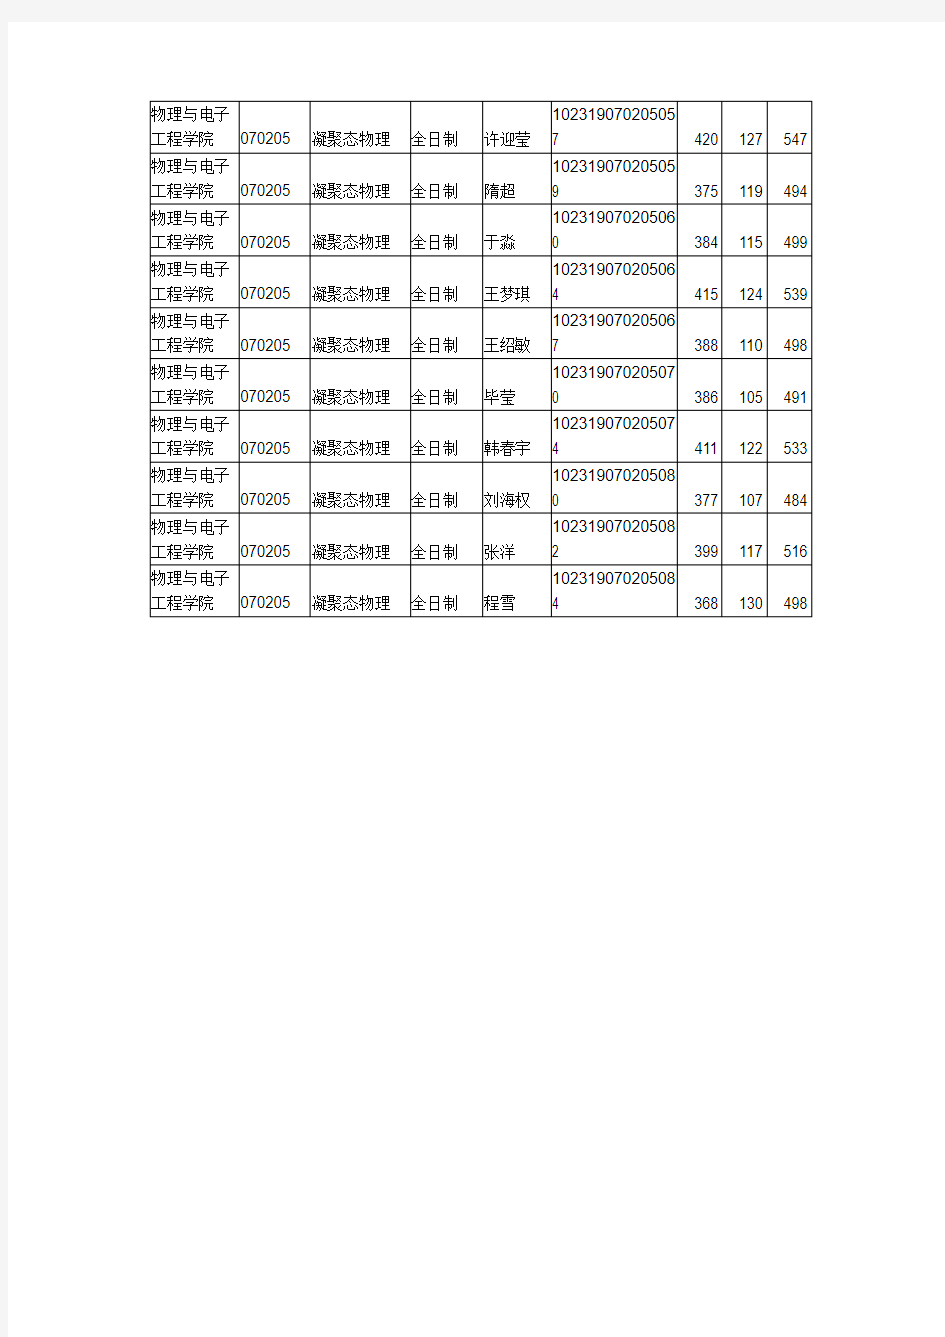 2019年哈尔滨师范大学物理与电子工程学院考研拟录取名单公示(第一志愿)